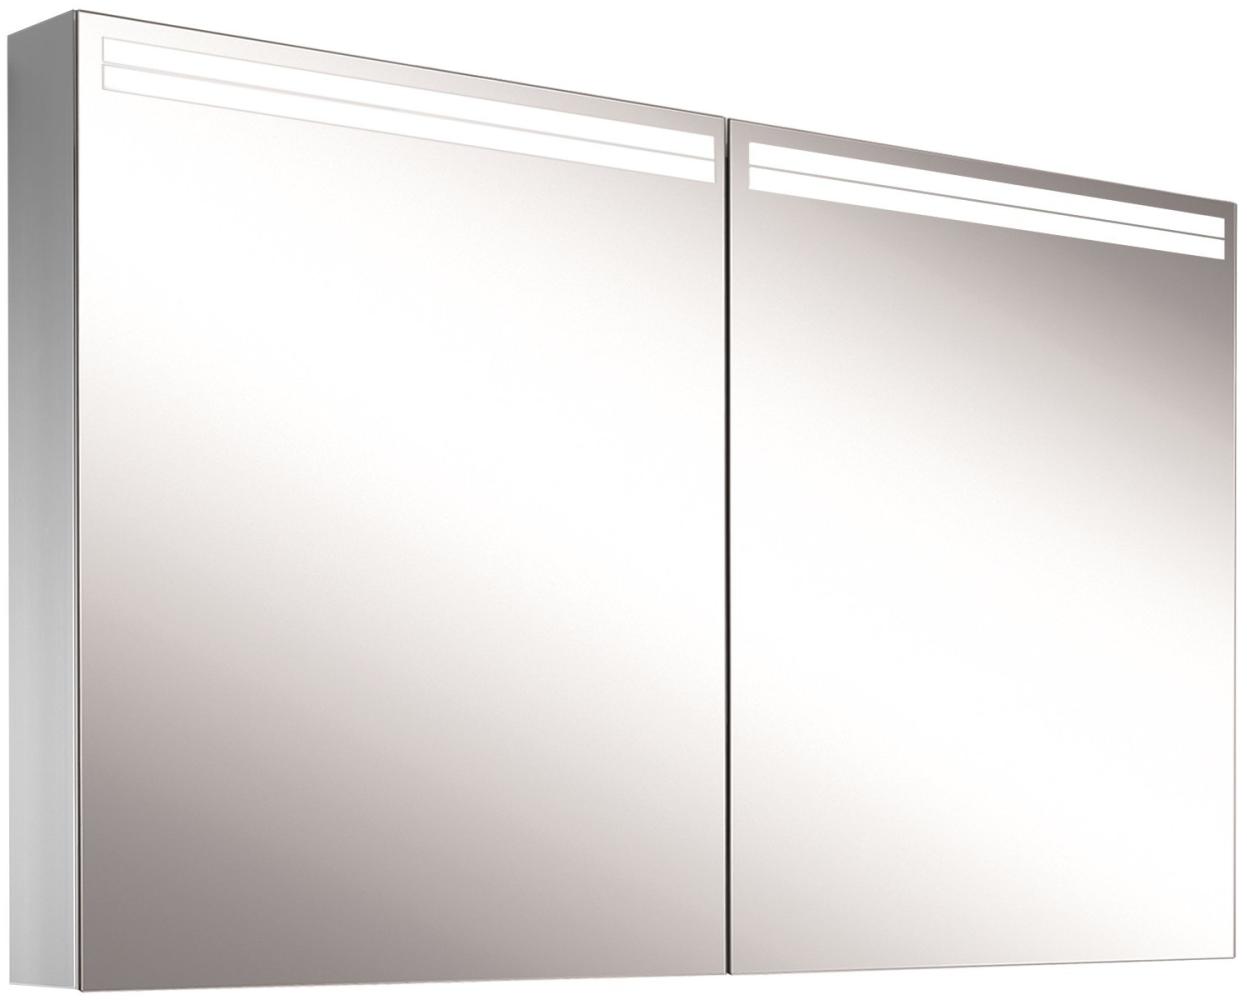 Schneider ARANGALINE LED Lichtspiegelschrank, 2 Doppelspiegeltüren, 130x70x12cm, 160. 530. 02. 41, Ausführung: EU-Norm/Korpus silber eloxiert - 160. 530. 02. 50 Bild 1